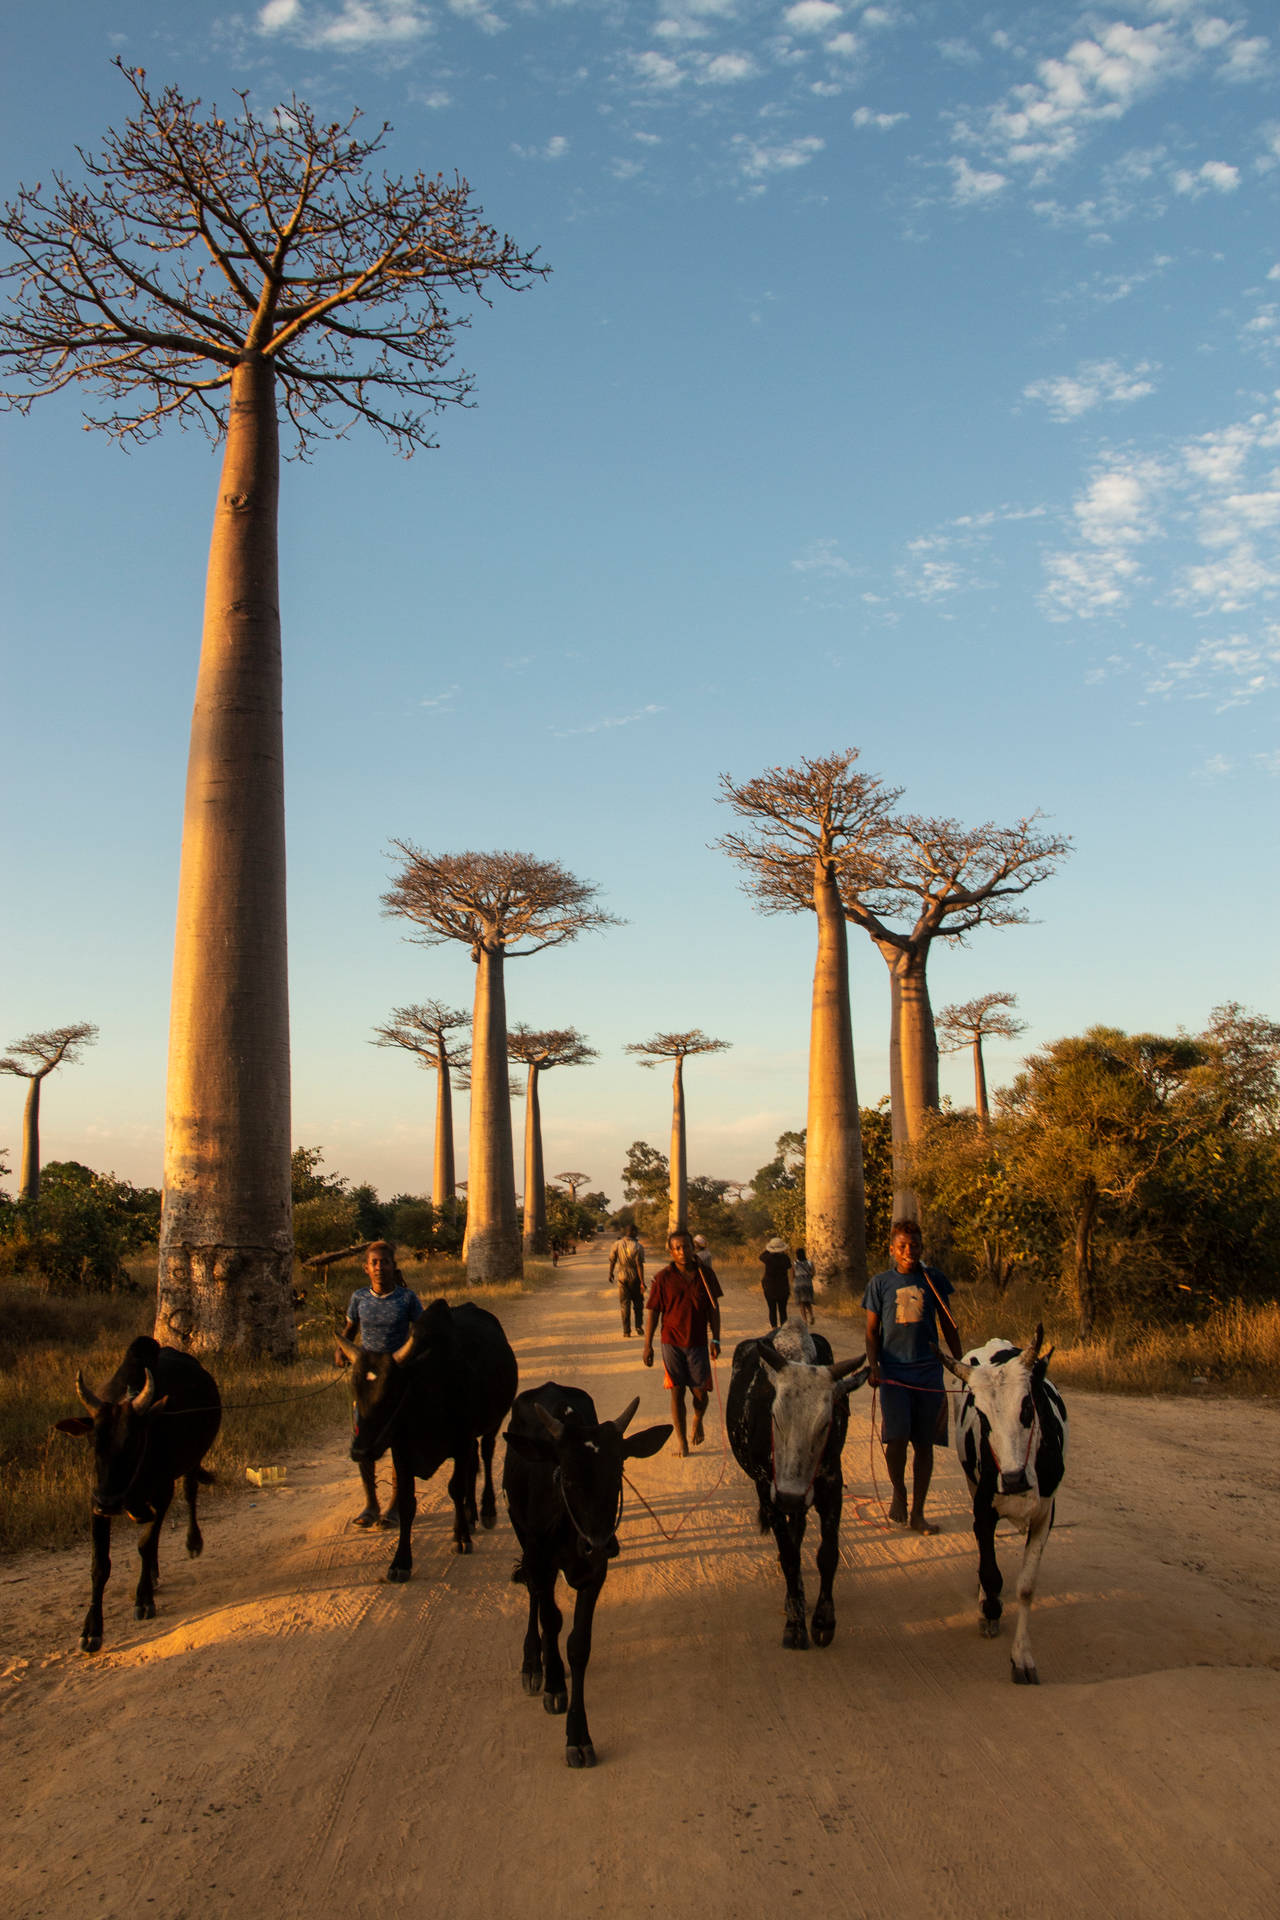 Madagascar Animals Background